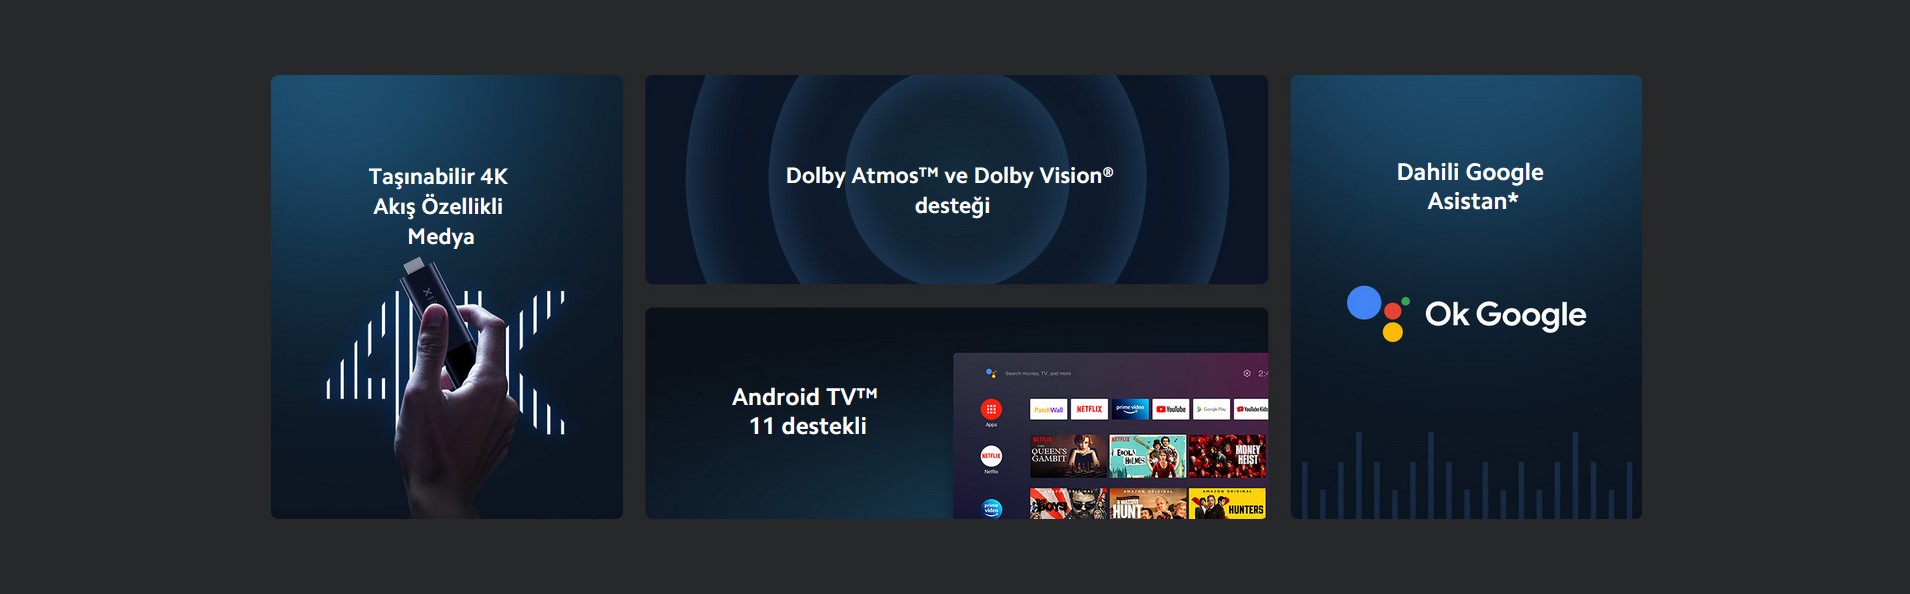 Taşınabilir 4K Akış Özellikli MedyaDolby Atmos™ ve Dolby Vision® desteği, Android TV™ 11 destekli, Dahili Google Asistan